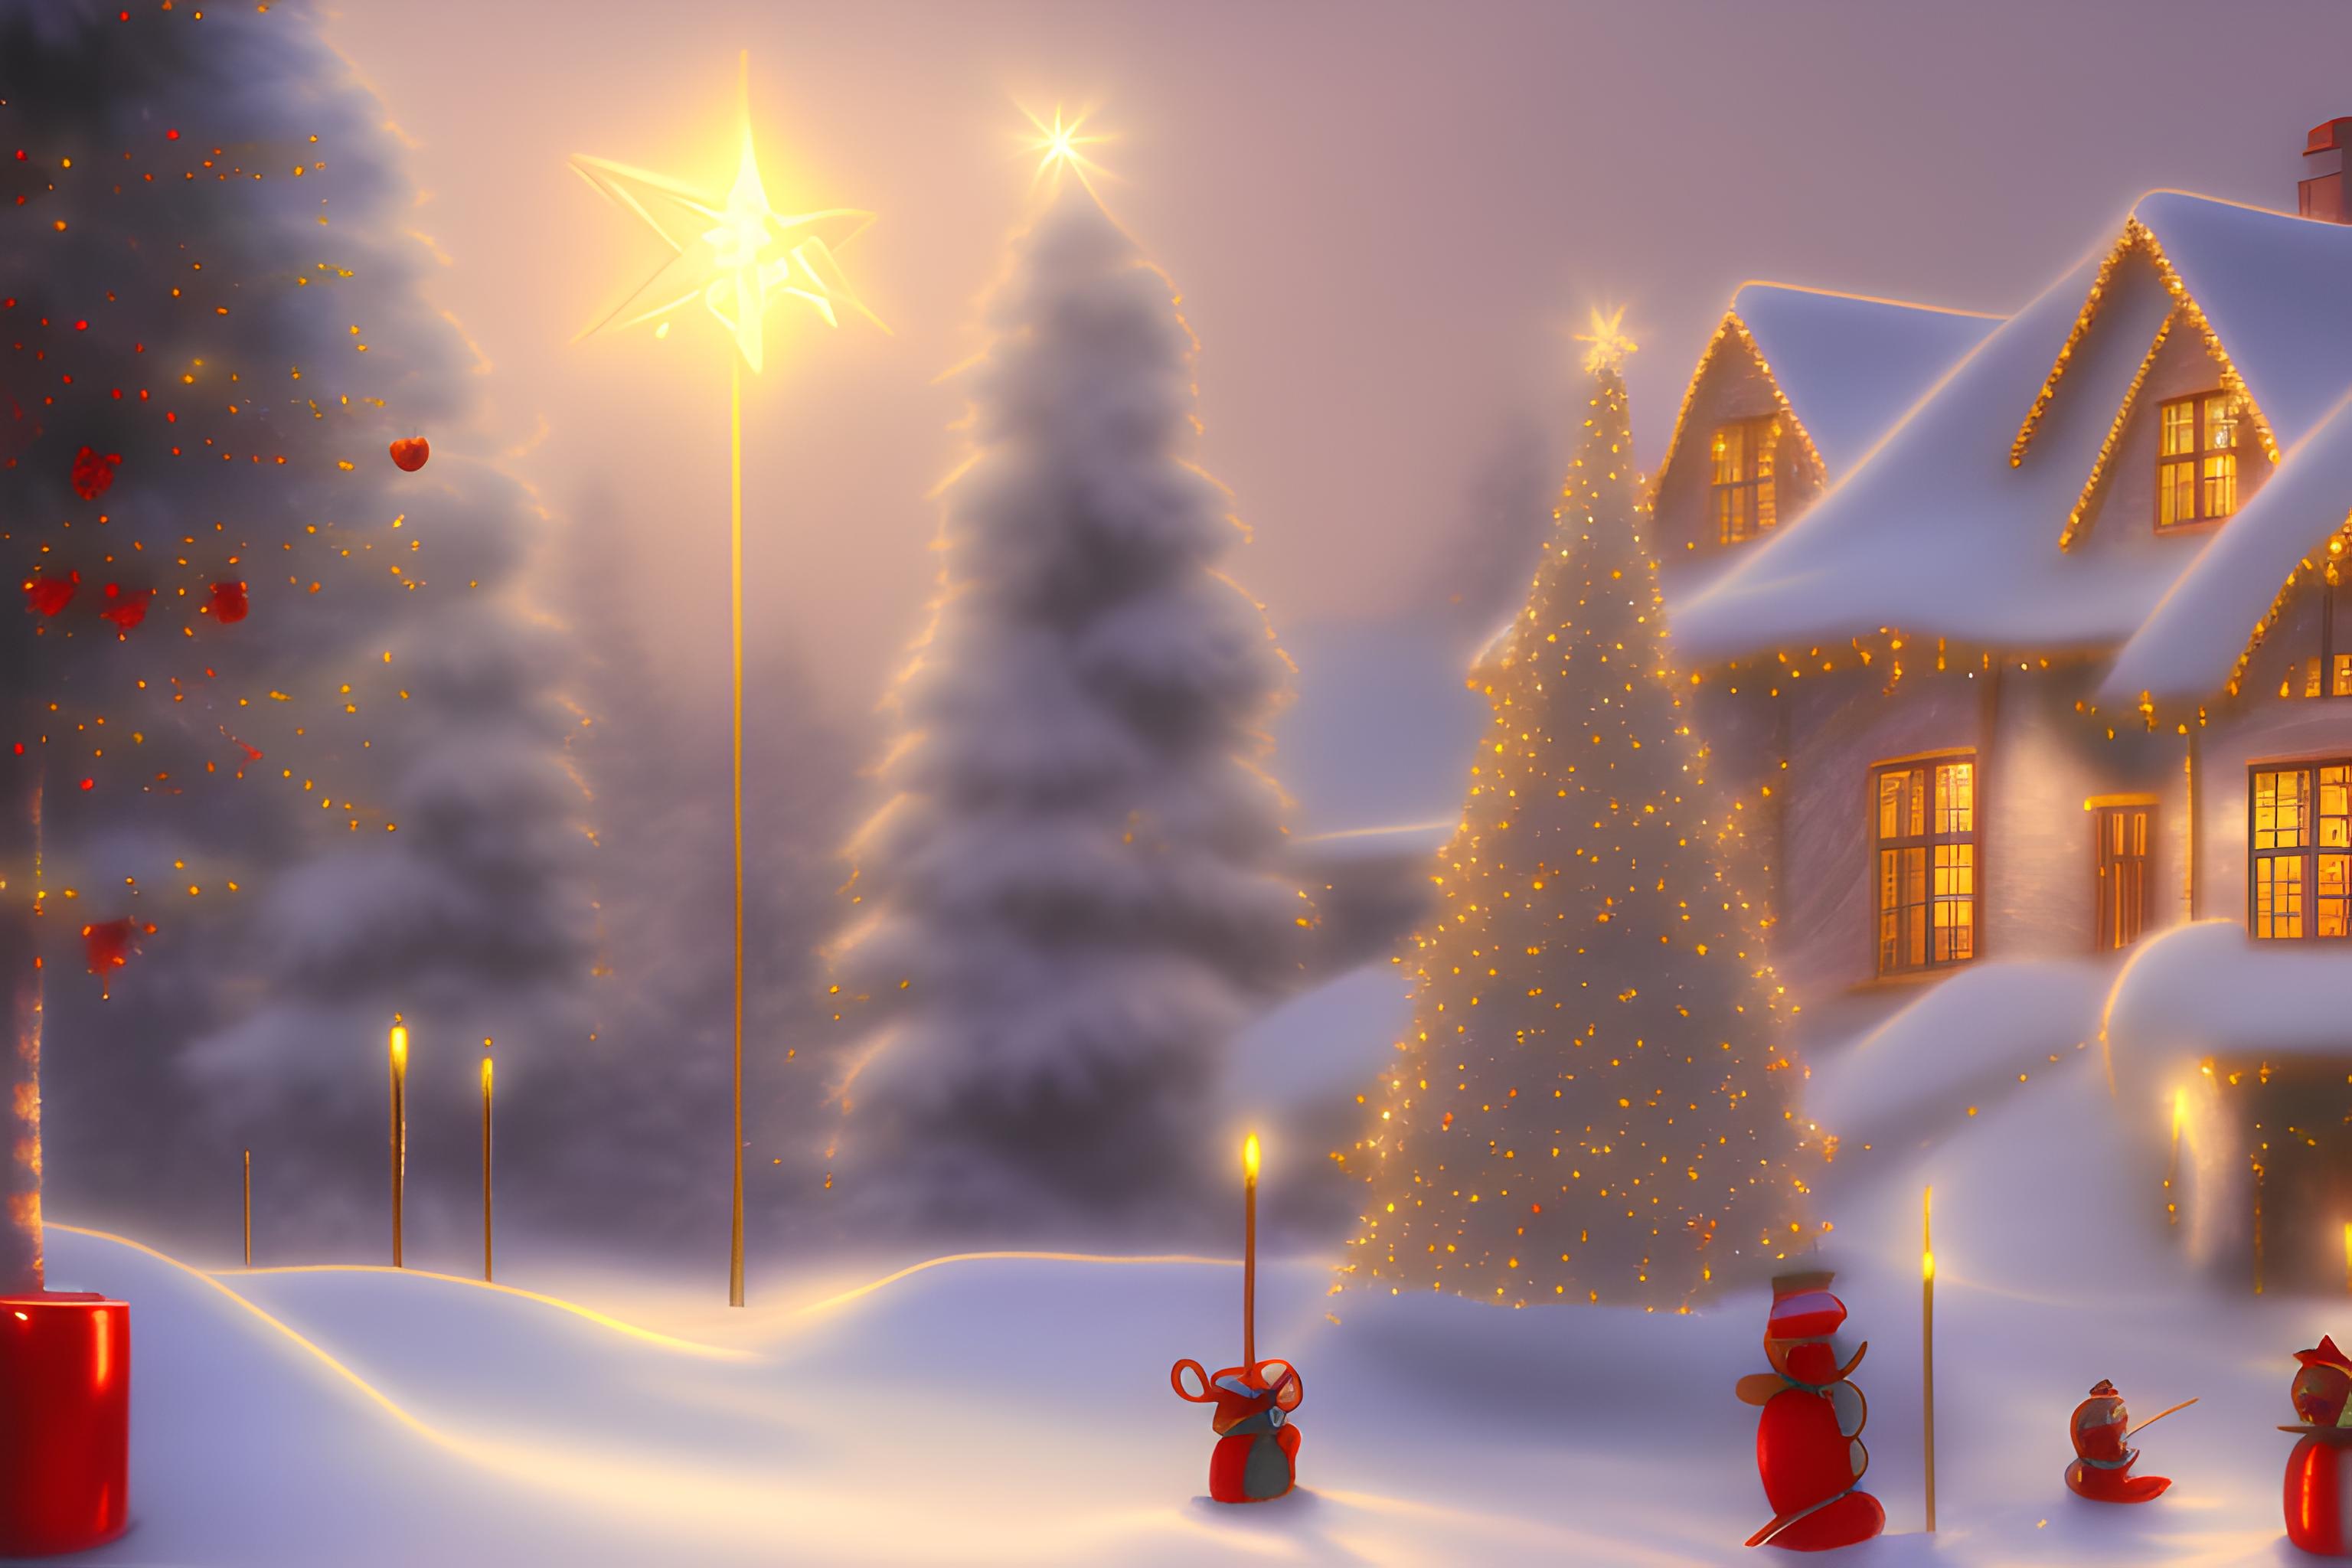 Hình Nền Winter Wonderland: Hình Nền Giáng Sinh Tuyệt đẹp Với Phong Cảnh  Tuyết Rơi Vào Ban đêm, Đẹp Hình Nền, Tuyết Rơi Hình Nền, Lý Lịch Hình Nền,  HD và Nền